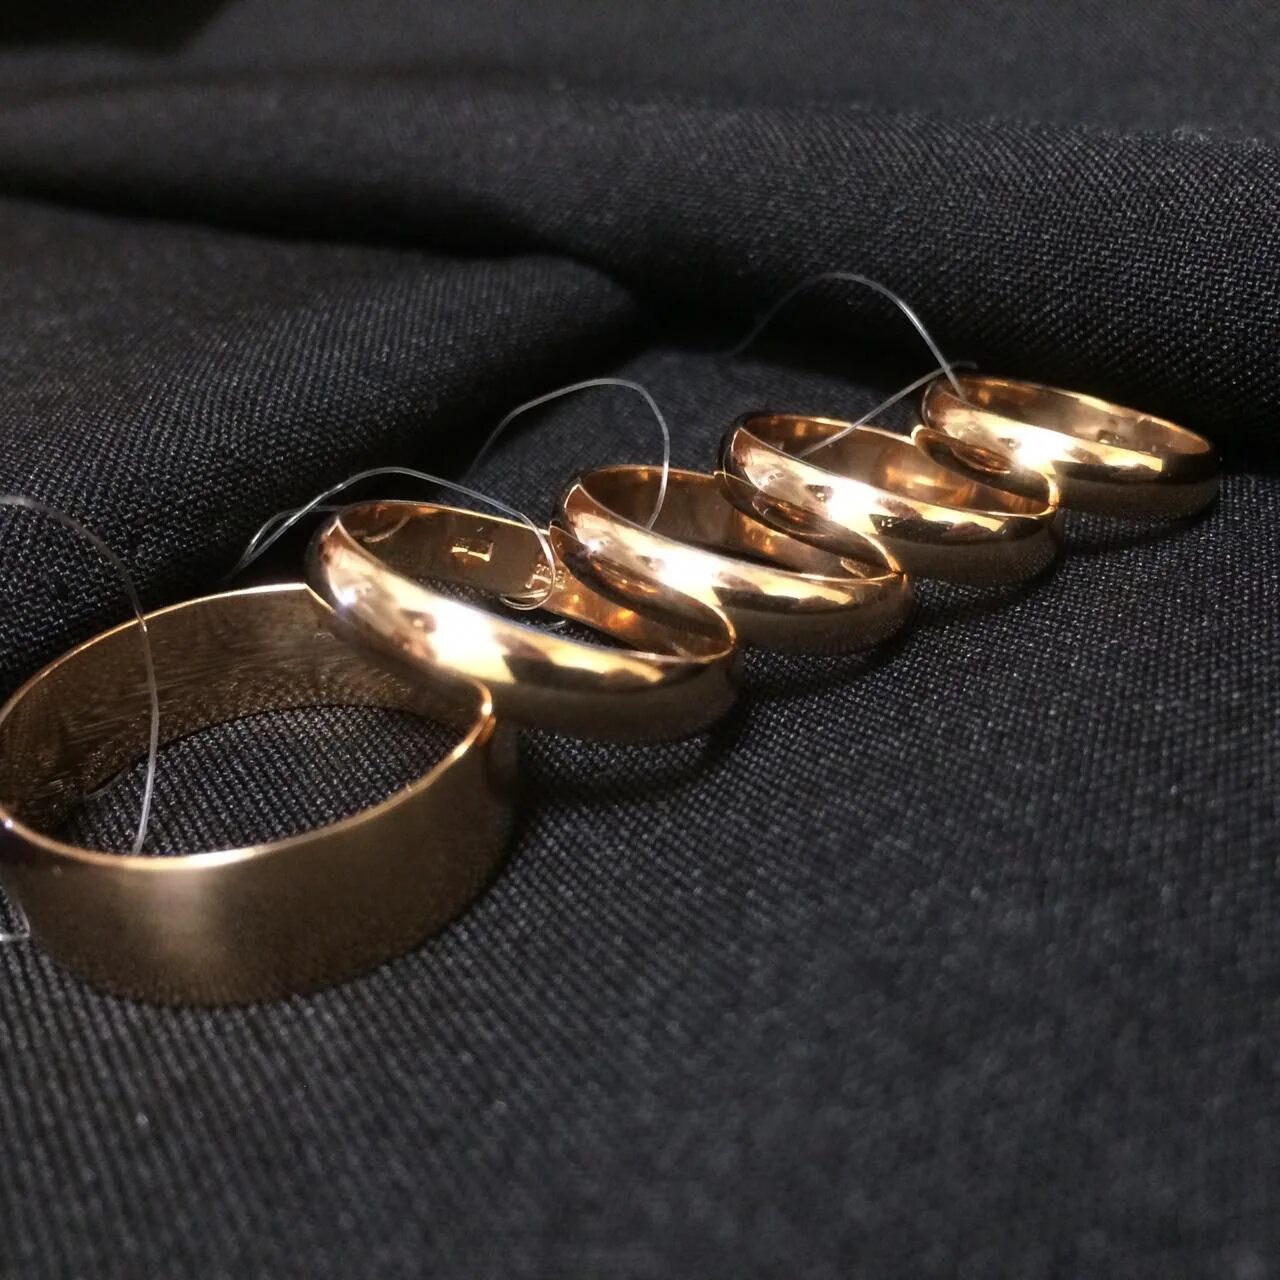 Обручальные кольца в ломбарде. Кольцо 7 грамм золота. Обручальное кольцо 5 грамм. Дубайское золото кольца обручальные. Грамм золота в беларуси 585